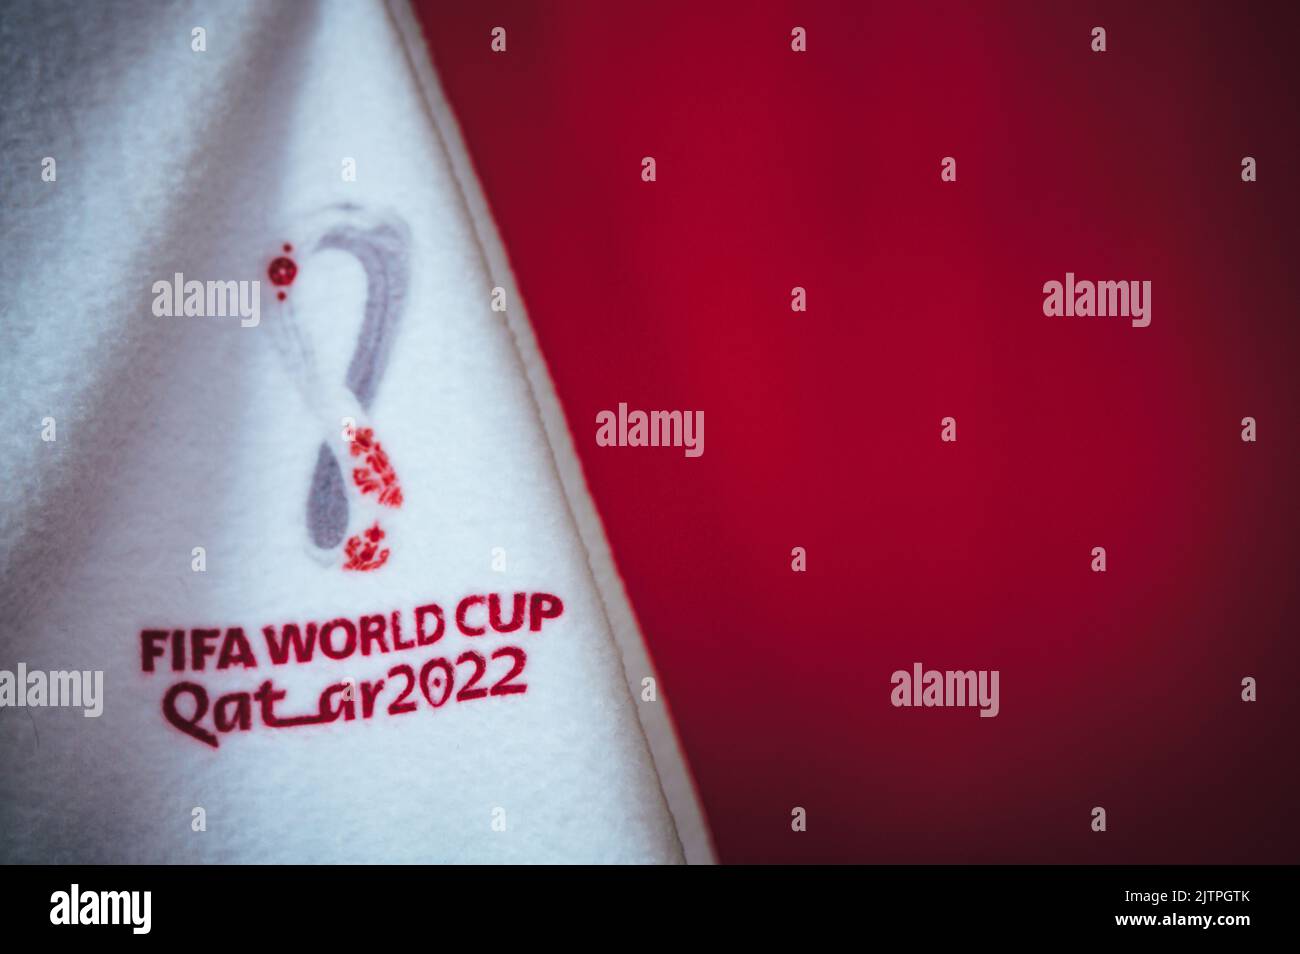 DOHA, KATAR, 30. AUGUST 2022: Roter Hintergrund für die FIFA Fußball-Weltmeisterschaft in Katar 2022. Offizielles Logo der Fußball-Weltmeisterschaft auf weißer Decke. Red Edit Sp Stockfoto